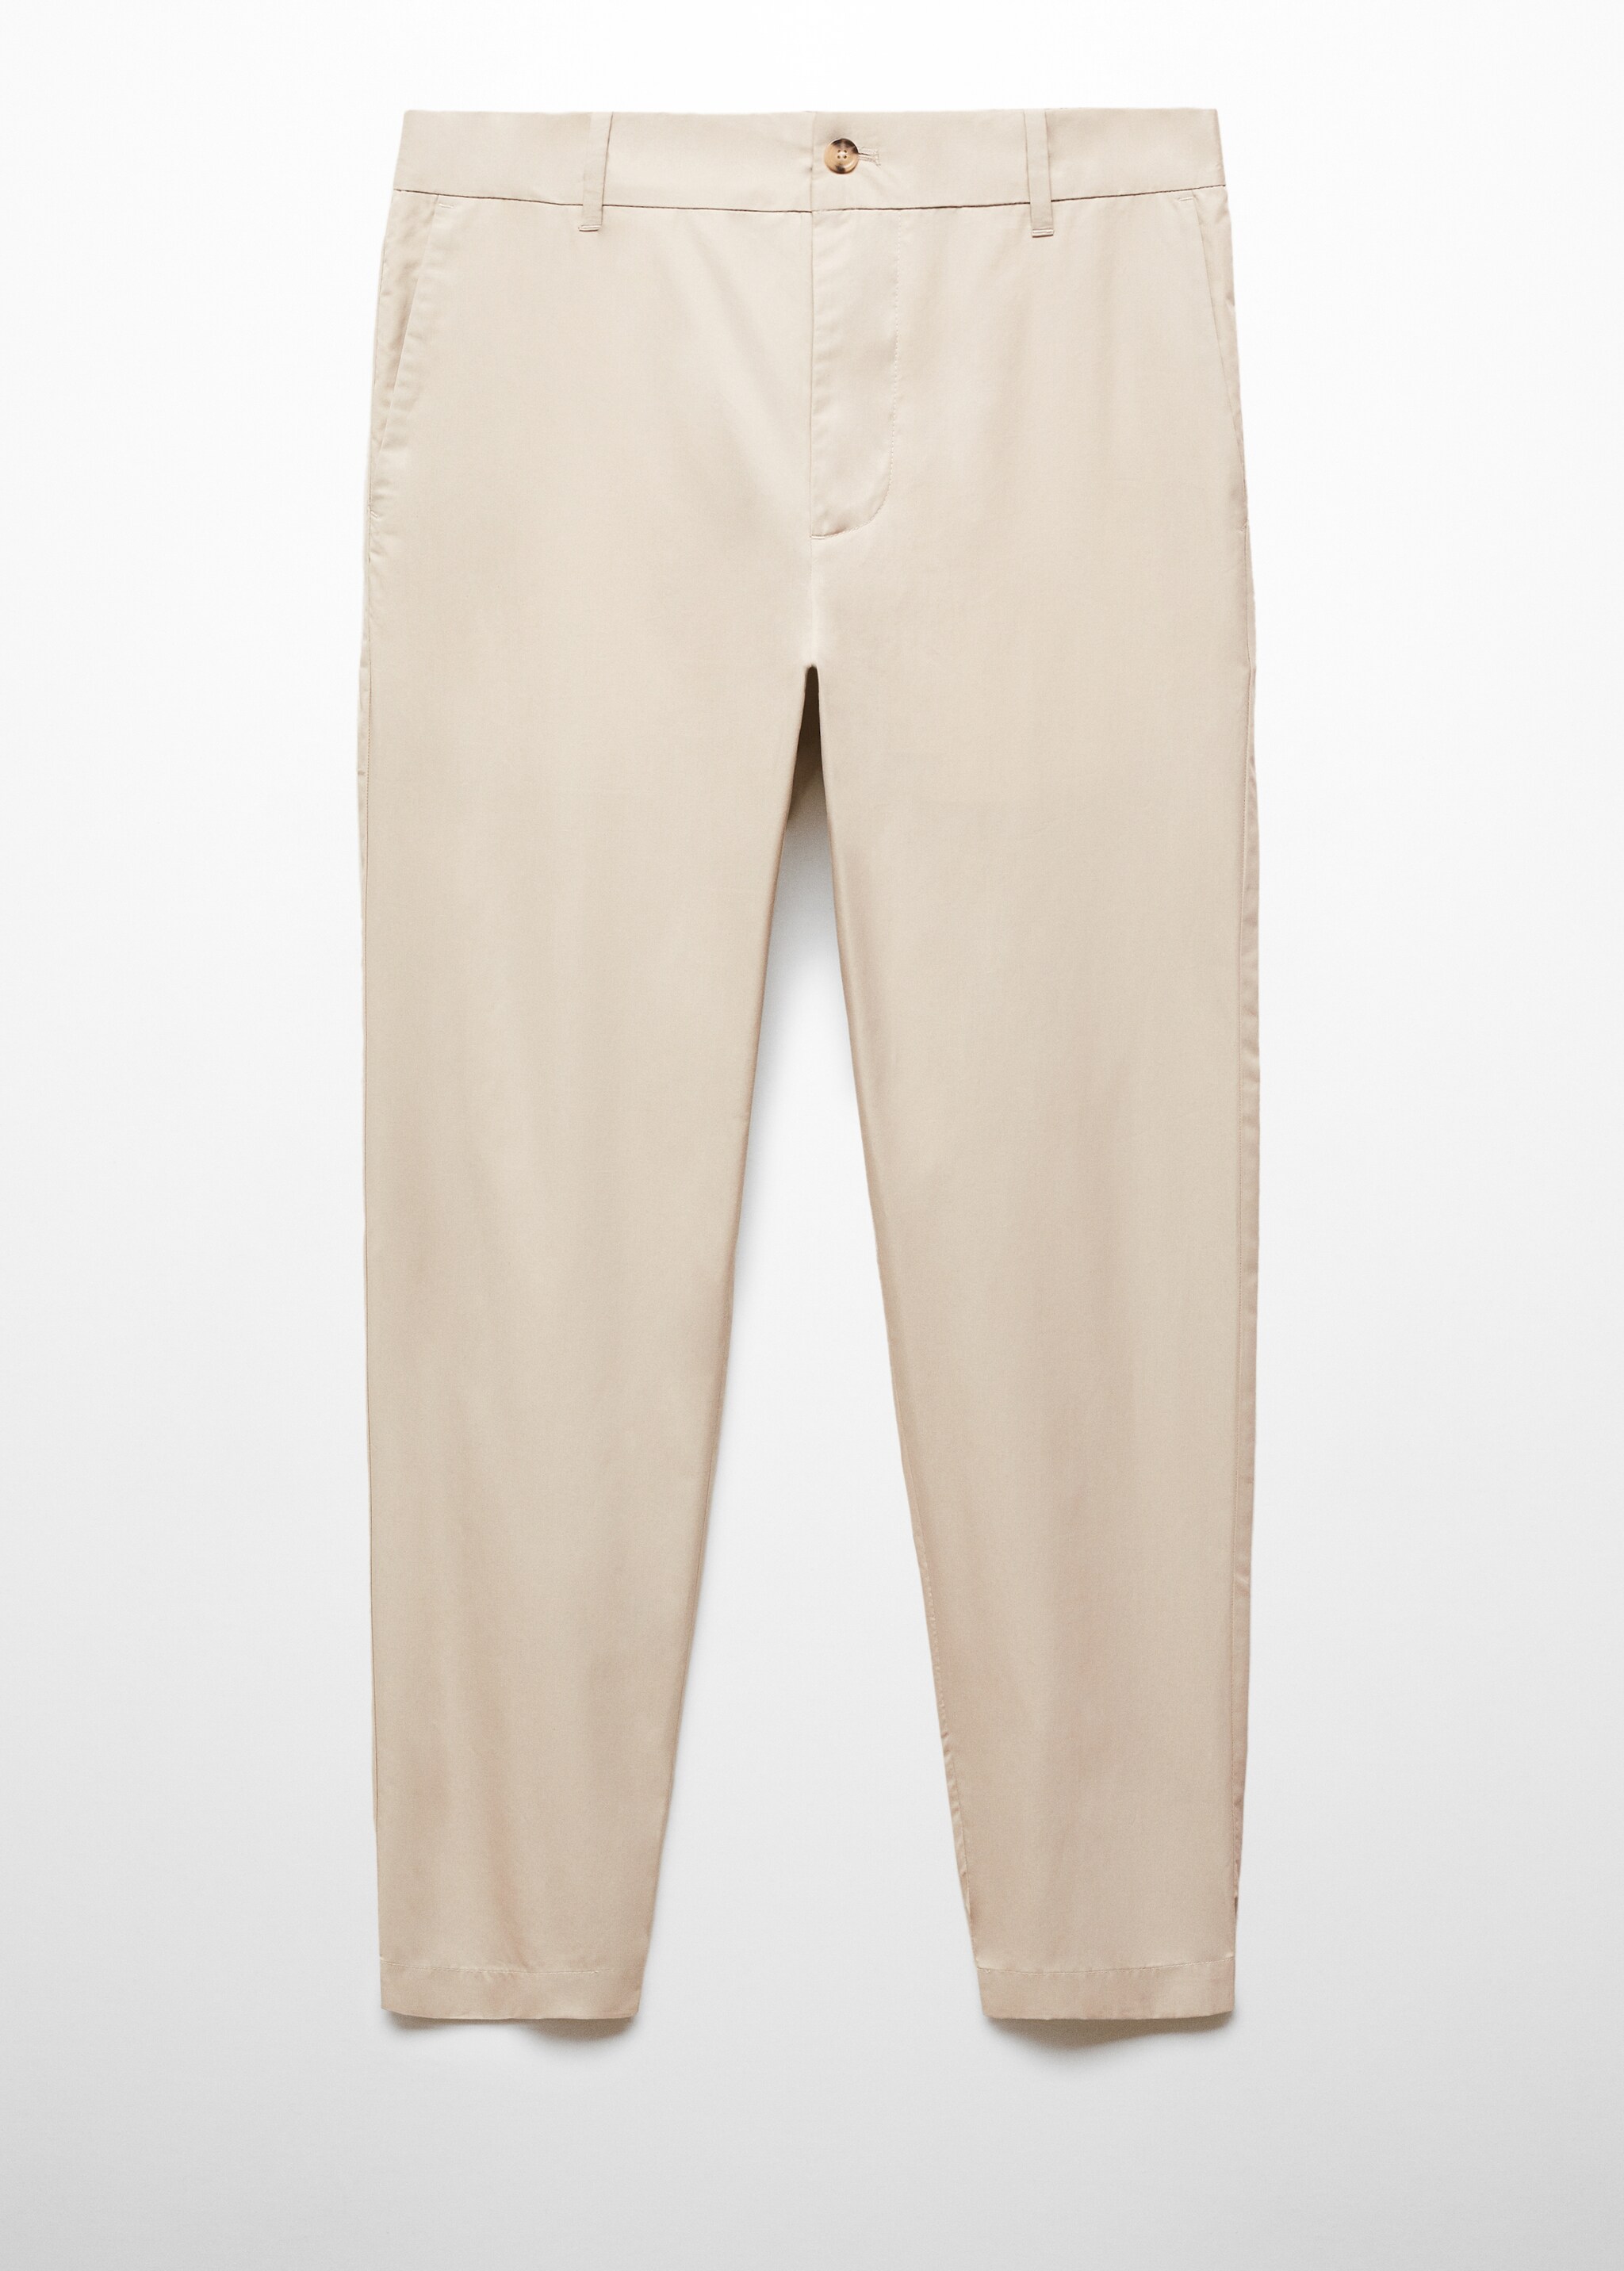 Pantaloni 100% cotone slim-fit - Articolo senza modello